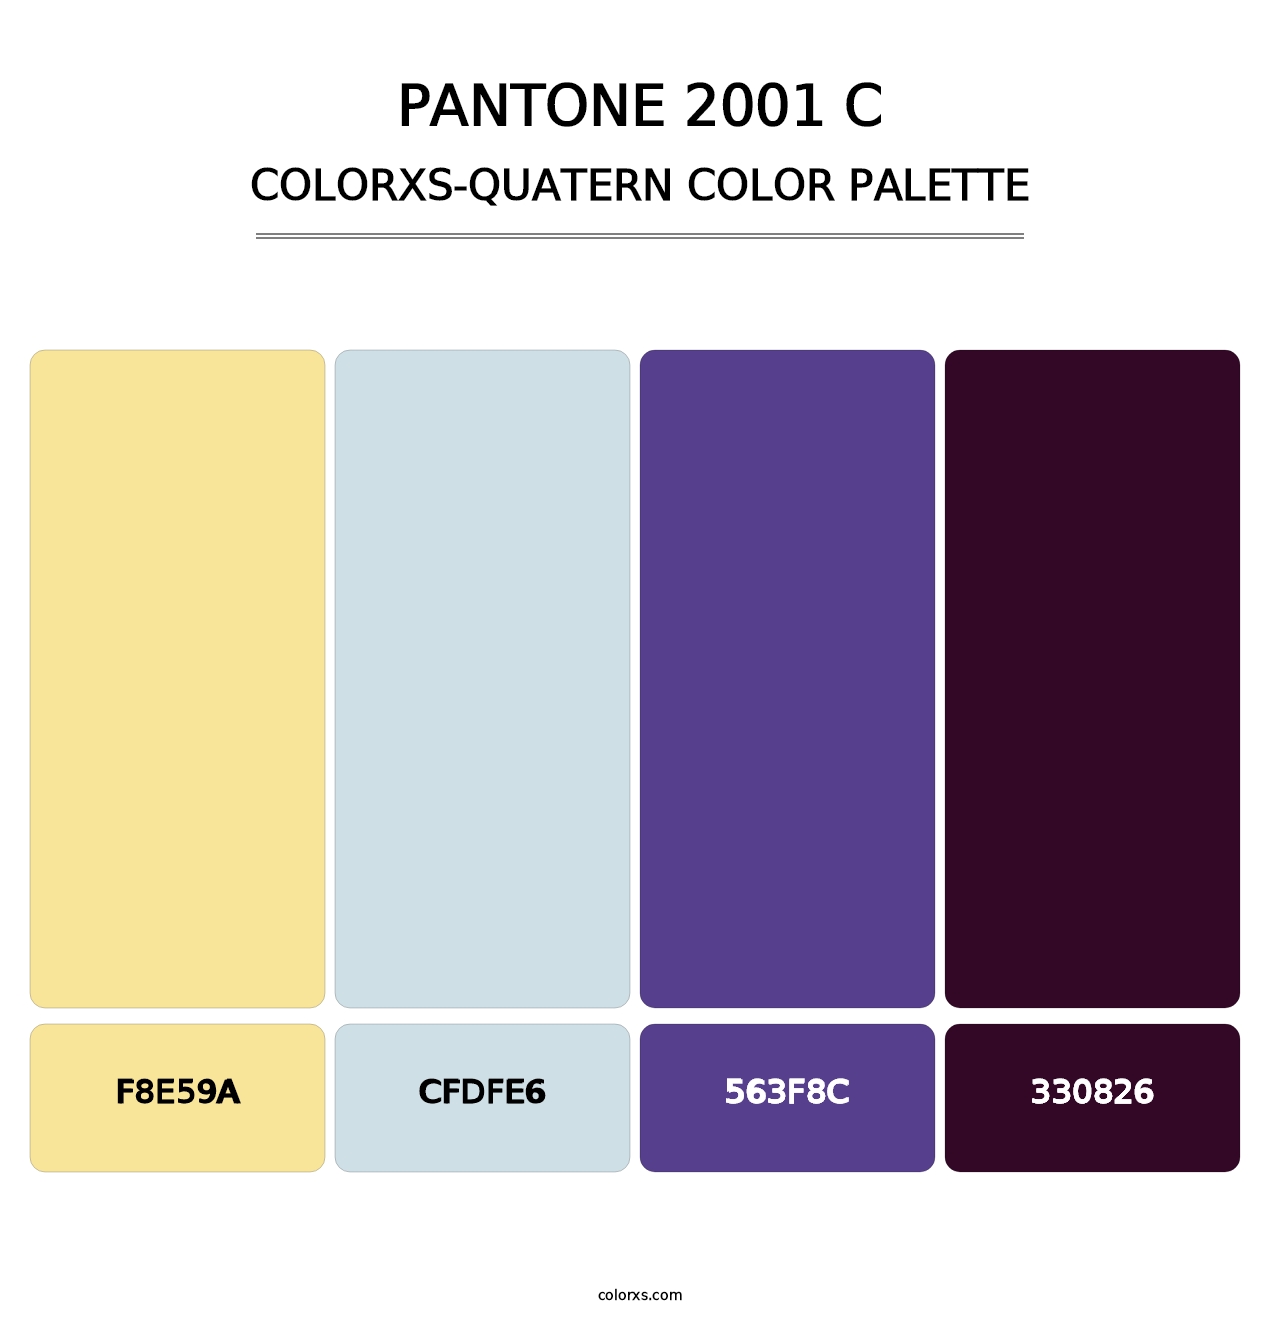 PANTONE 2001 C - Colorxs Quatern Palette